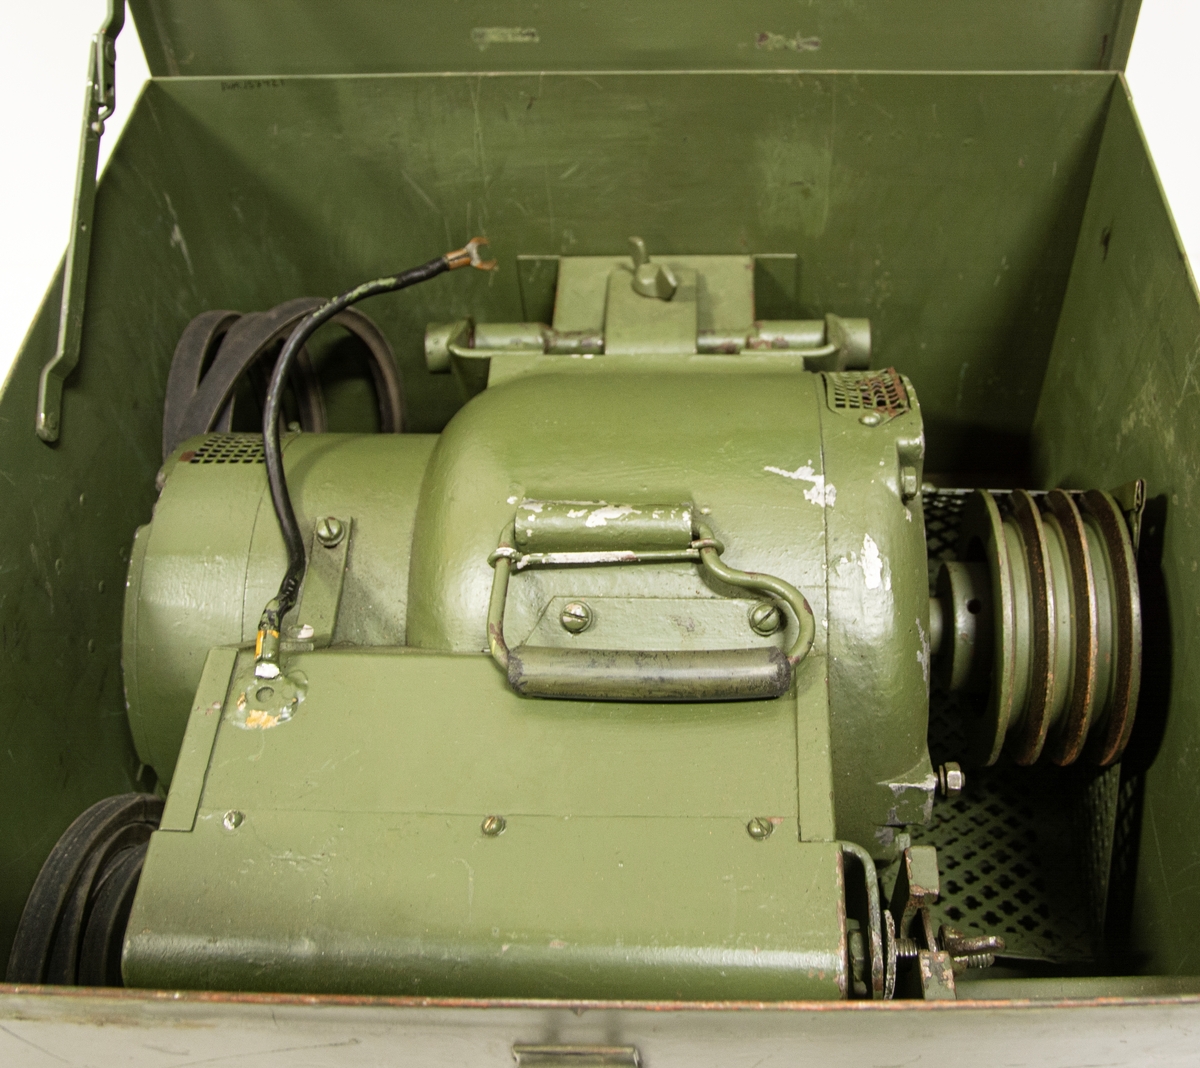 Kraftaggregat till spaningsradar PS-41. Förvaras i grön plåtlåda märkt: 2.